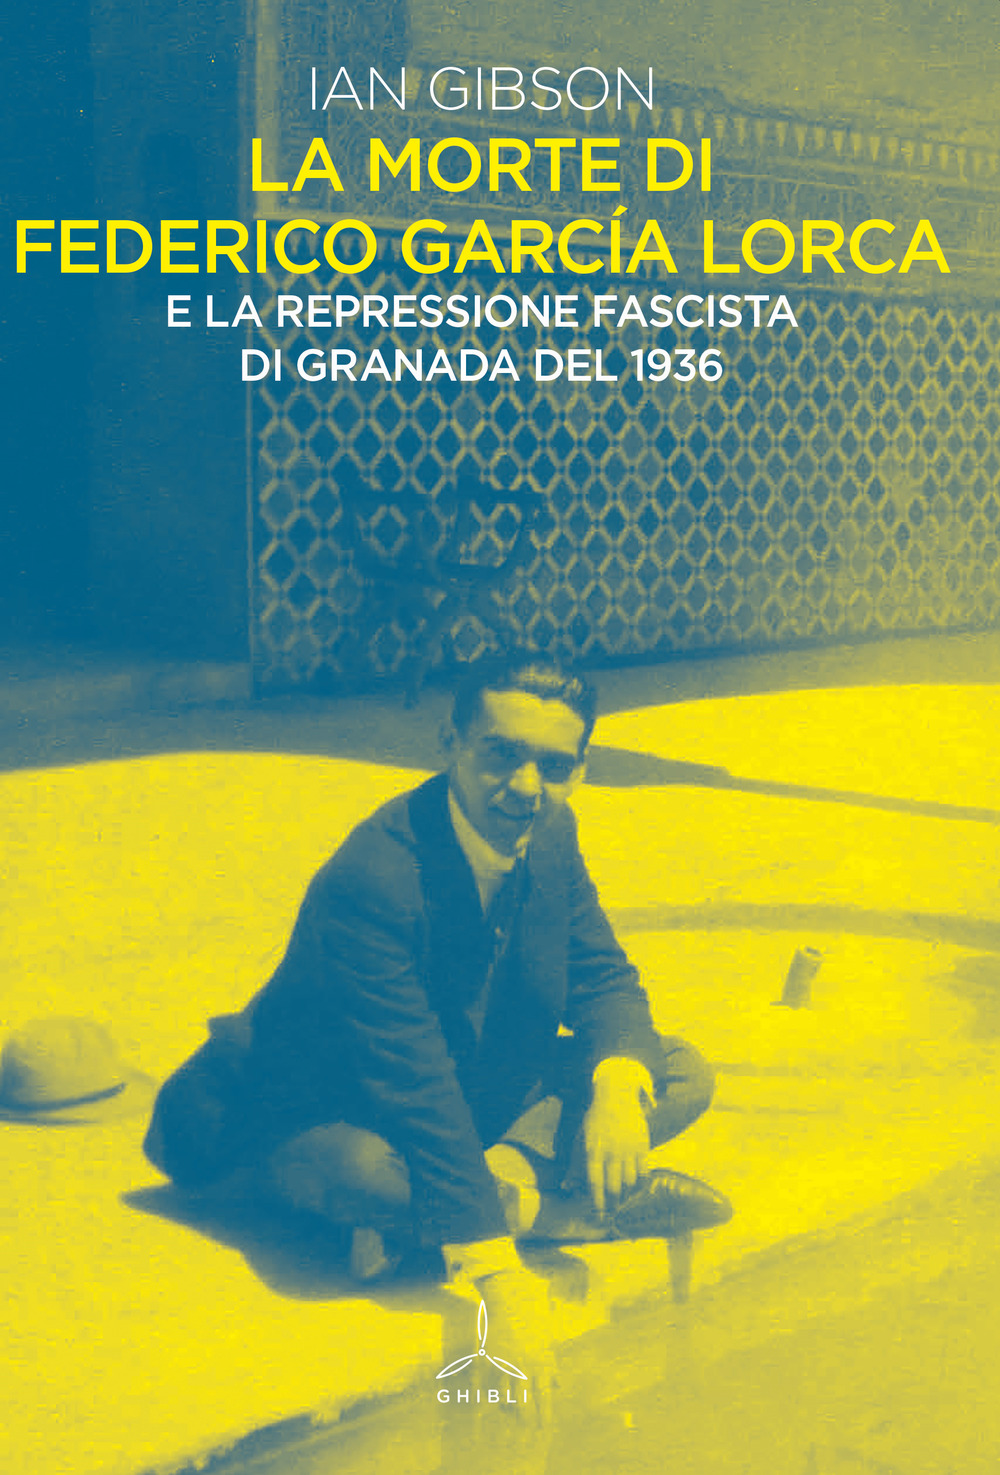 La morte di Federico Garcia Lorca